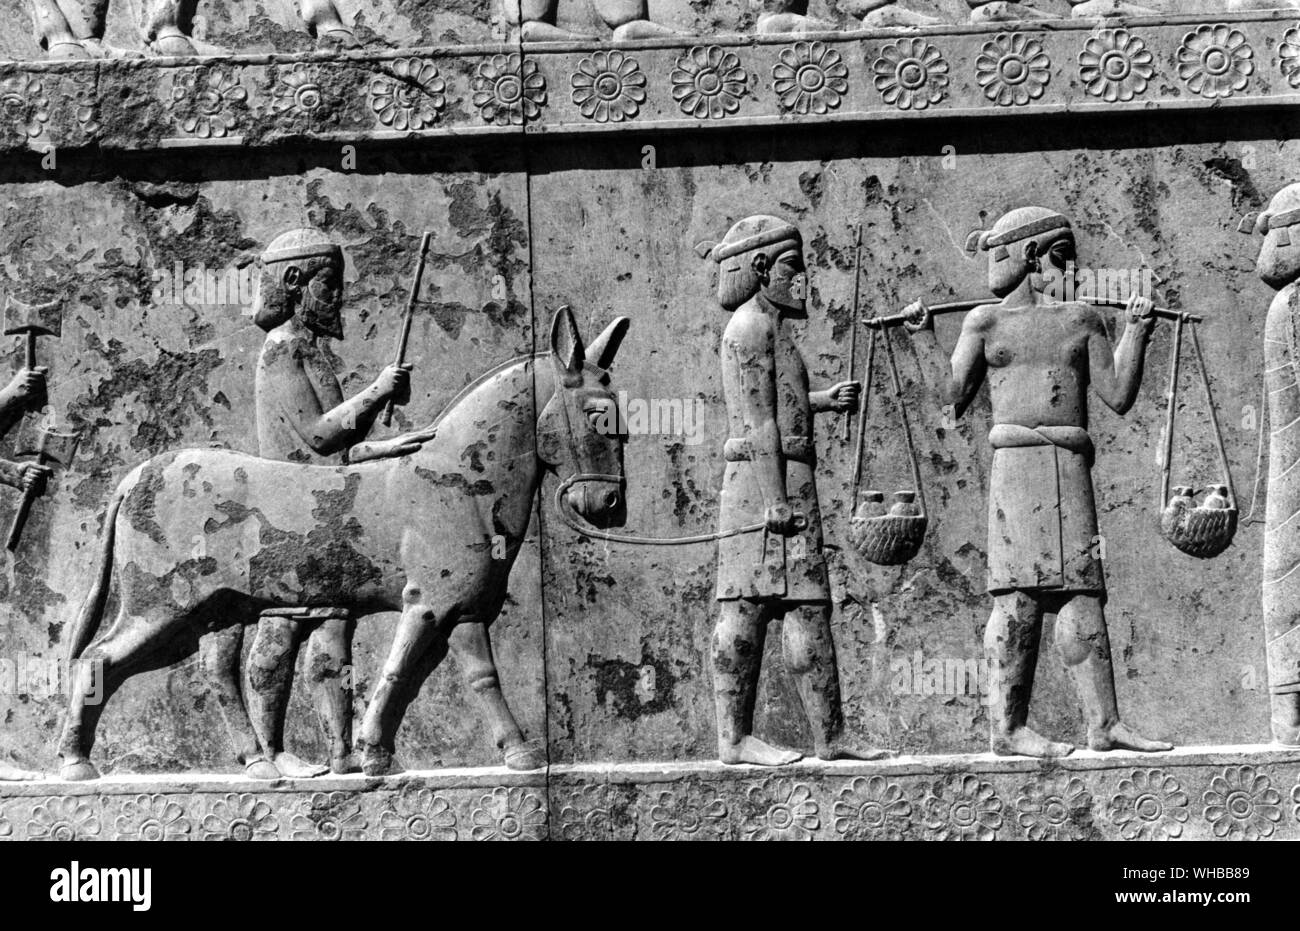 Persepolis : Antigua ciudad de Persia , capital del Imperio Persa , fundada por Darío . Cerca de la moderna Shiraz, en Irán . Foto de stock